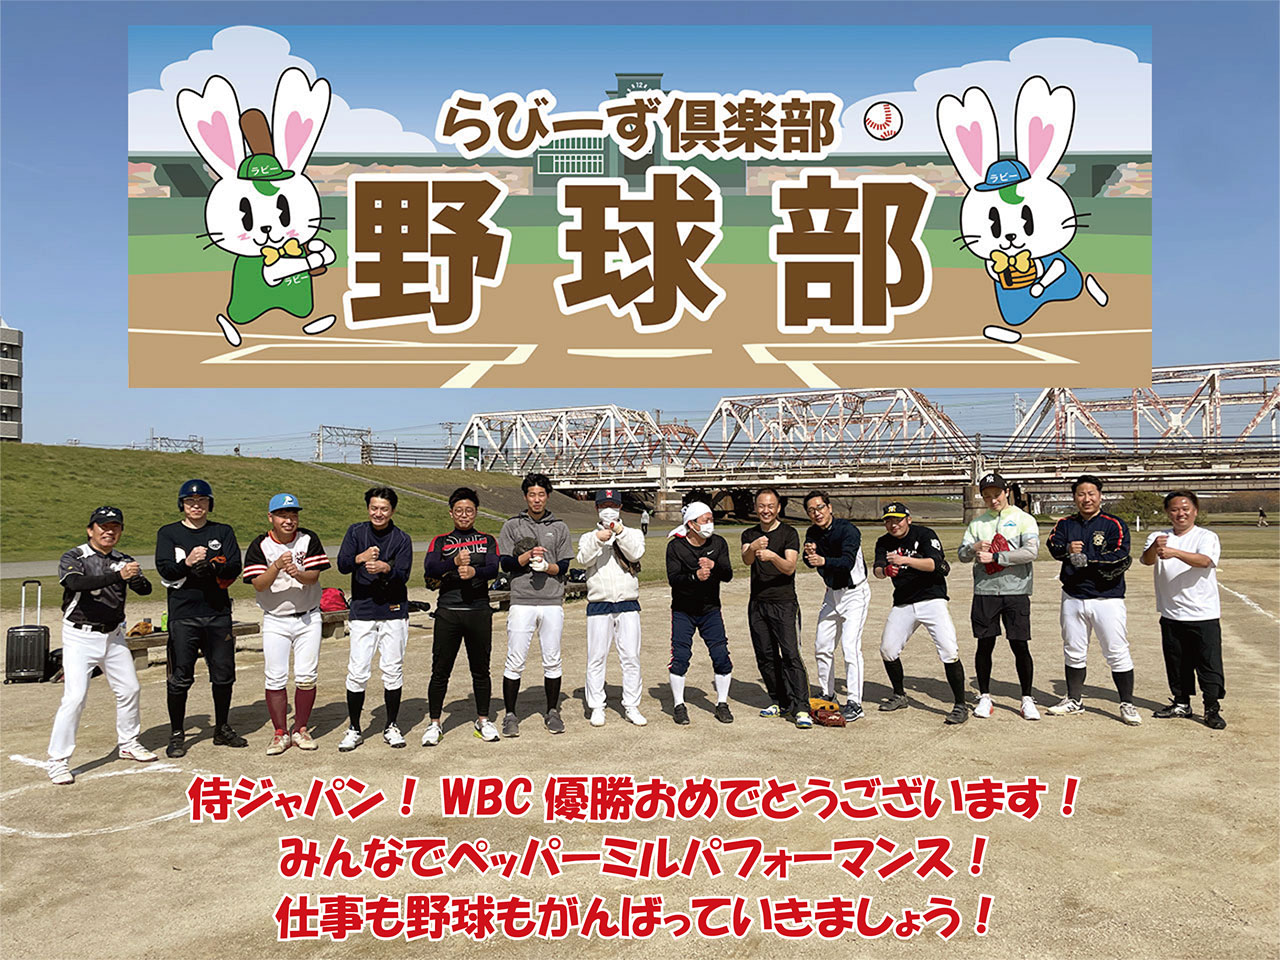 【5月10日】軟式野球の練習会と紅白戦しました イメージ画像